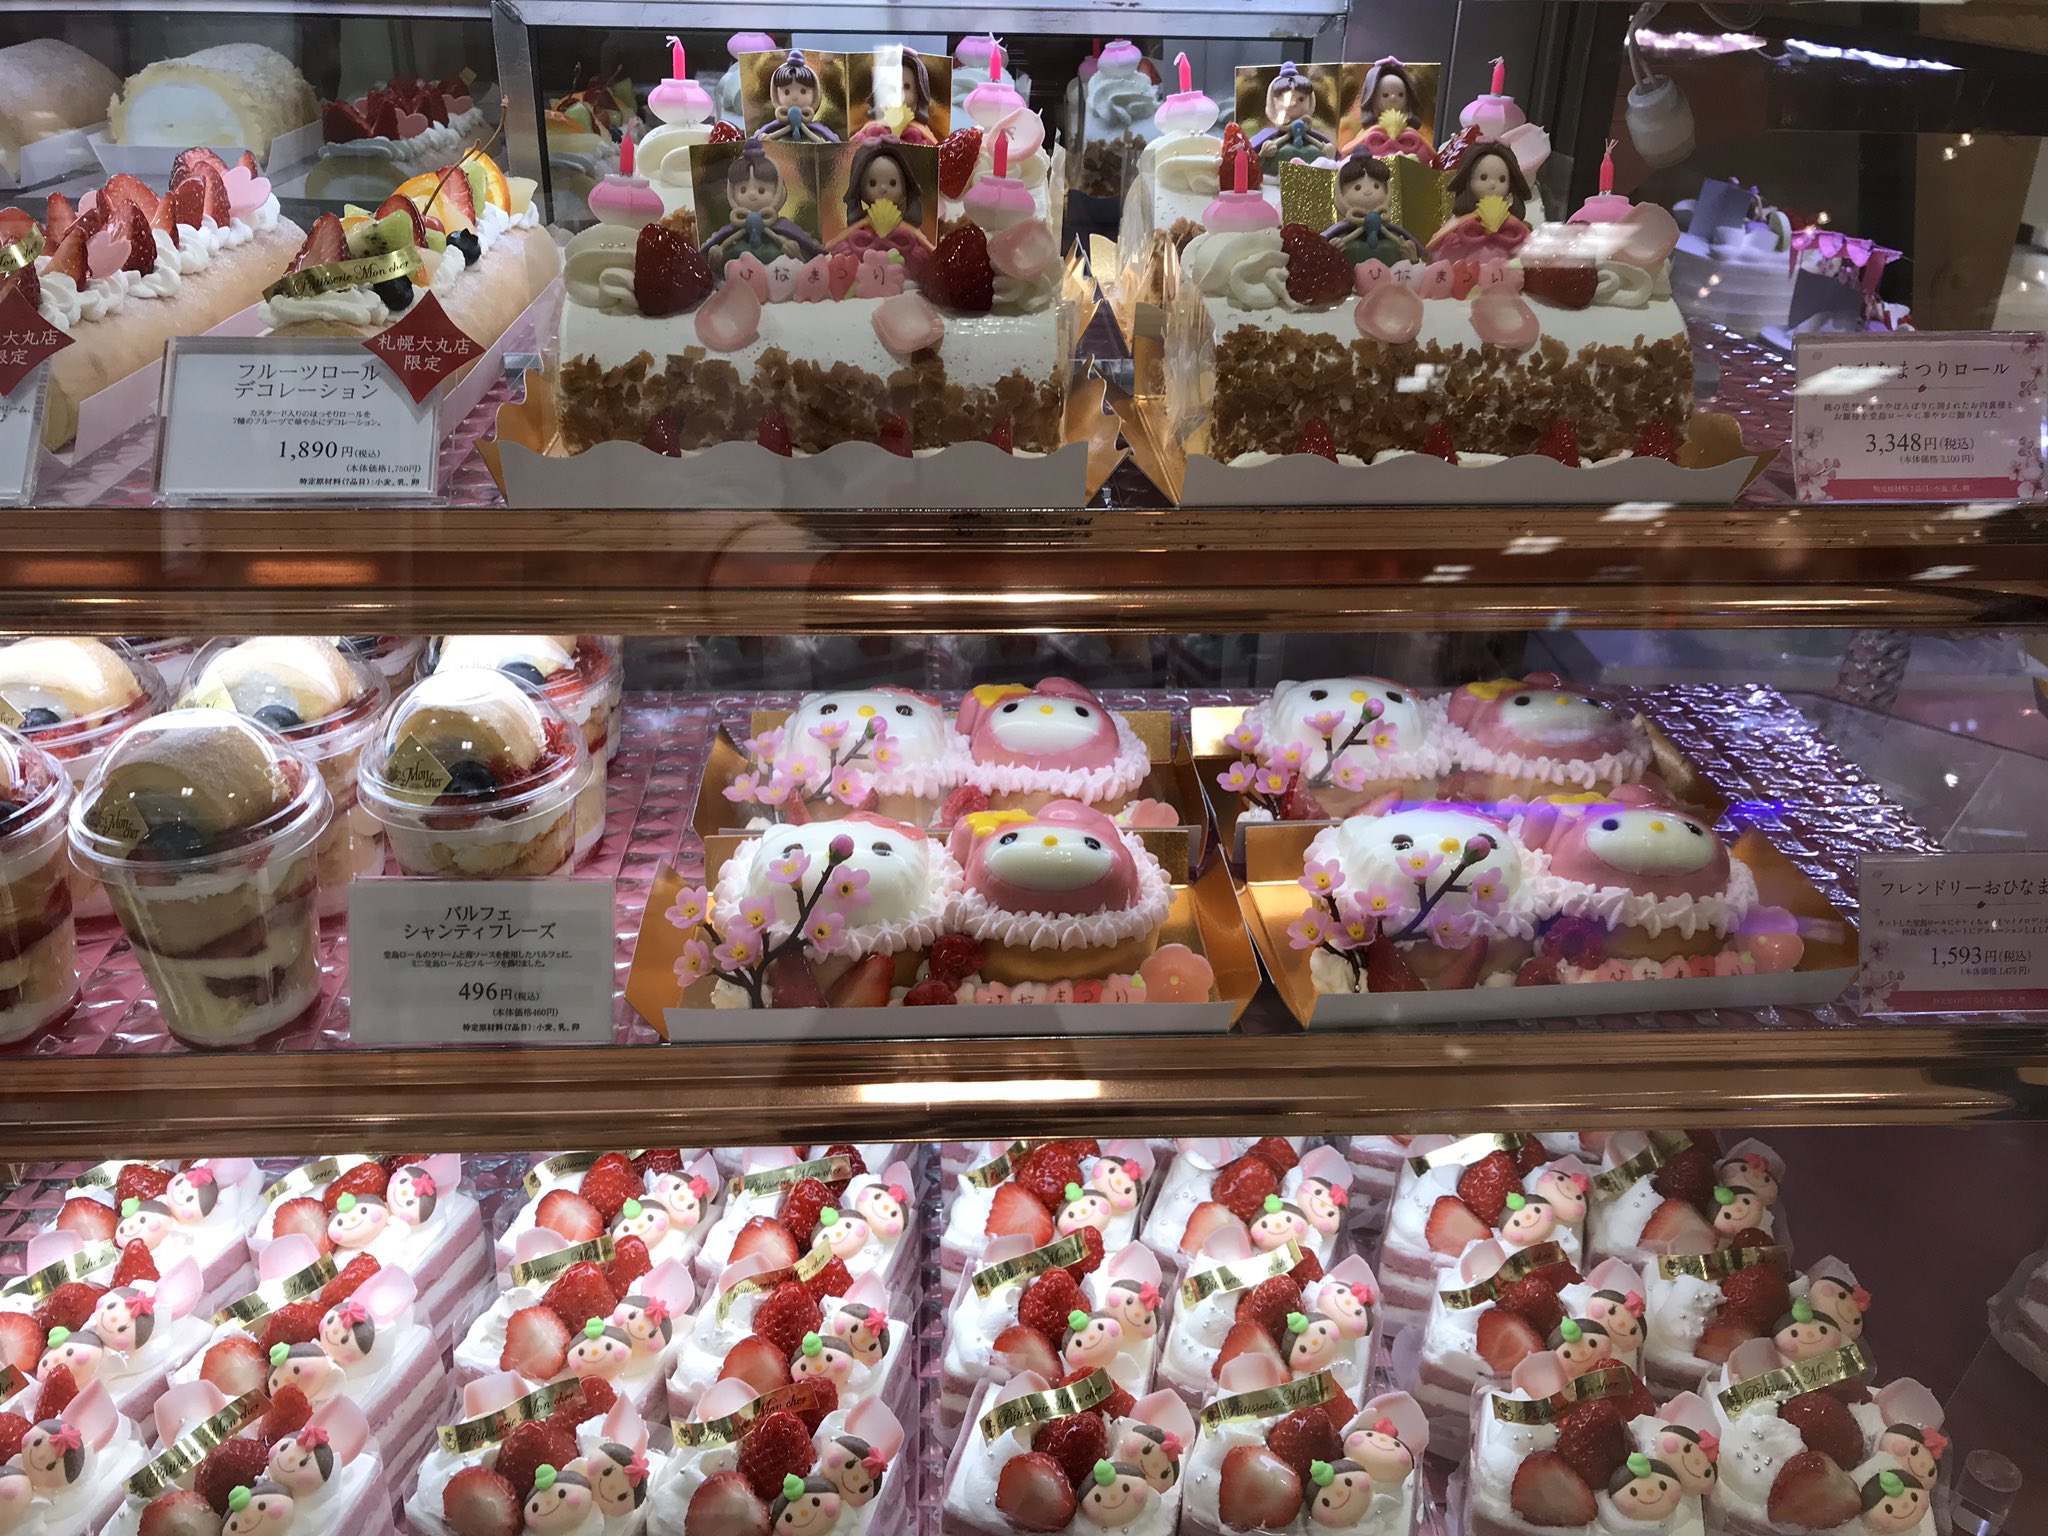 大丸札幌店 デパ地下トピックス 今日から3月 3月のイベントといえばまずは明後日の ひなまつり ほっぺタウンお菓子売場では ひなまつりのケーキをたくさん取り揃えてお待ちいたしております 画像はモンシェール ルタオ モロゾフ きのとやのケーキ